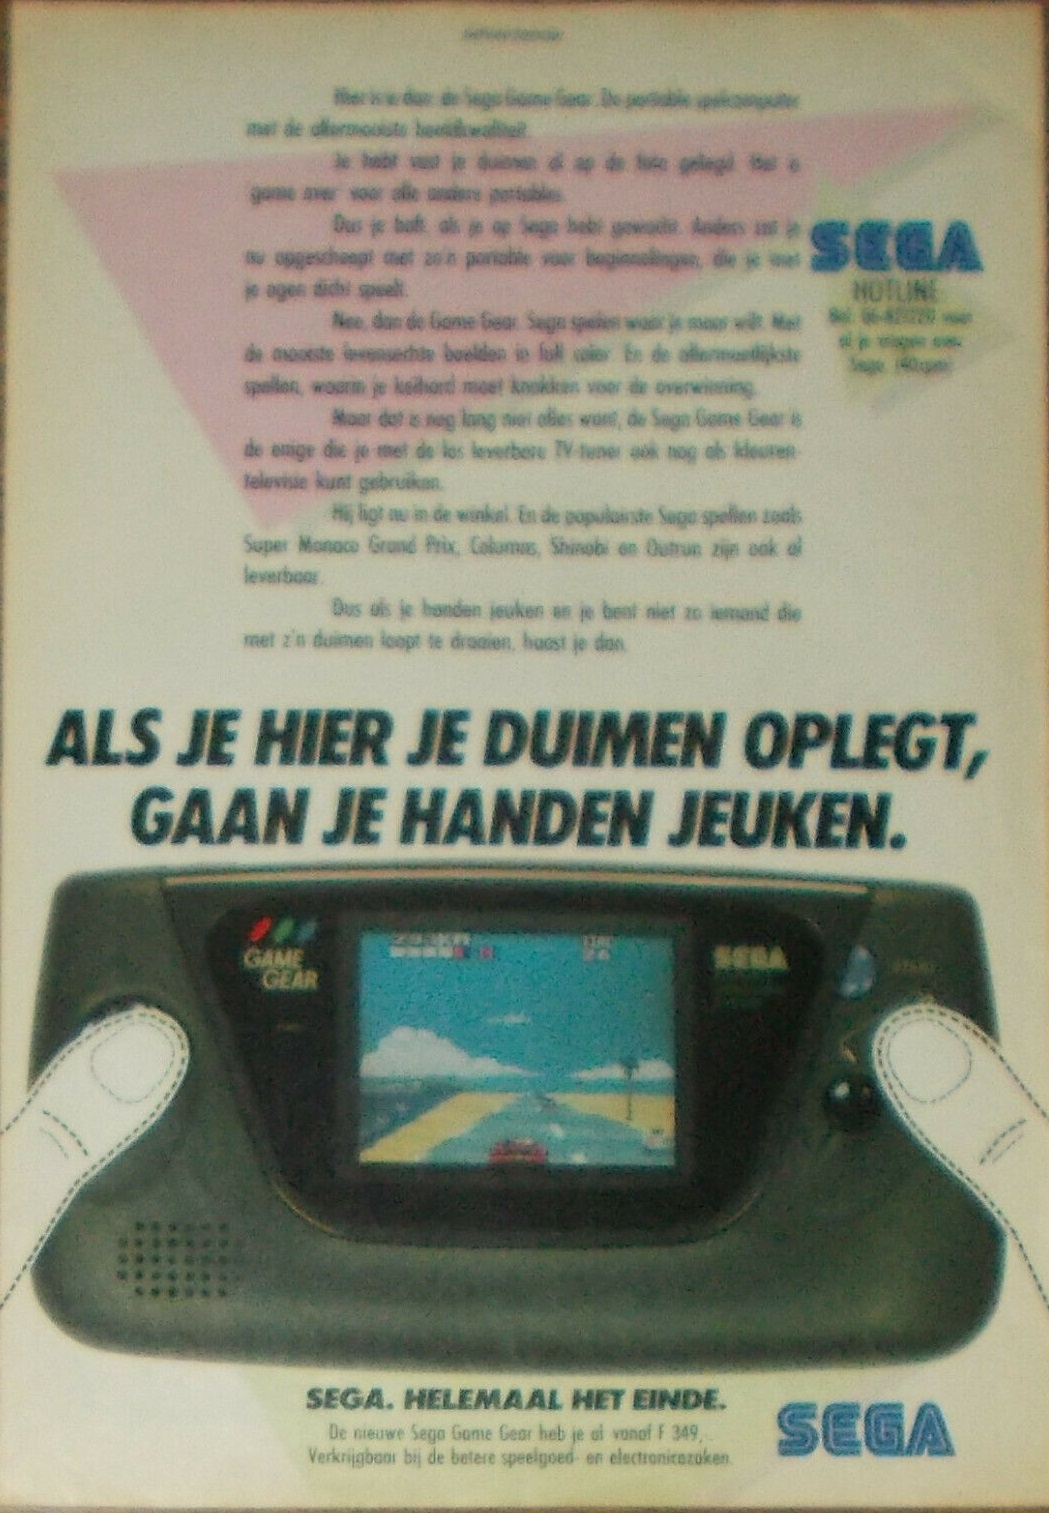 GG NL 1991 advert.jpg